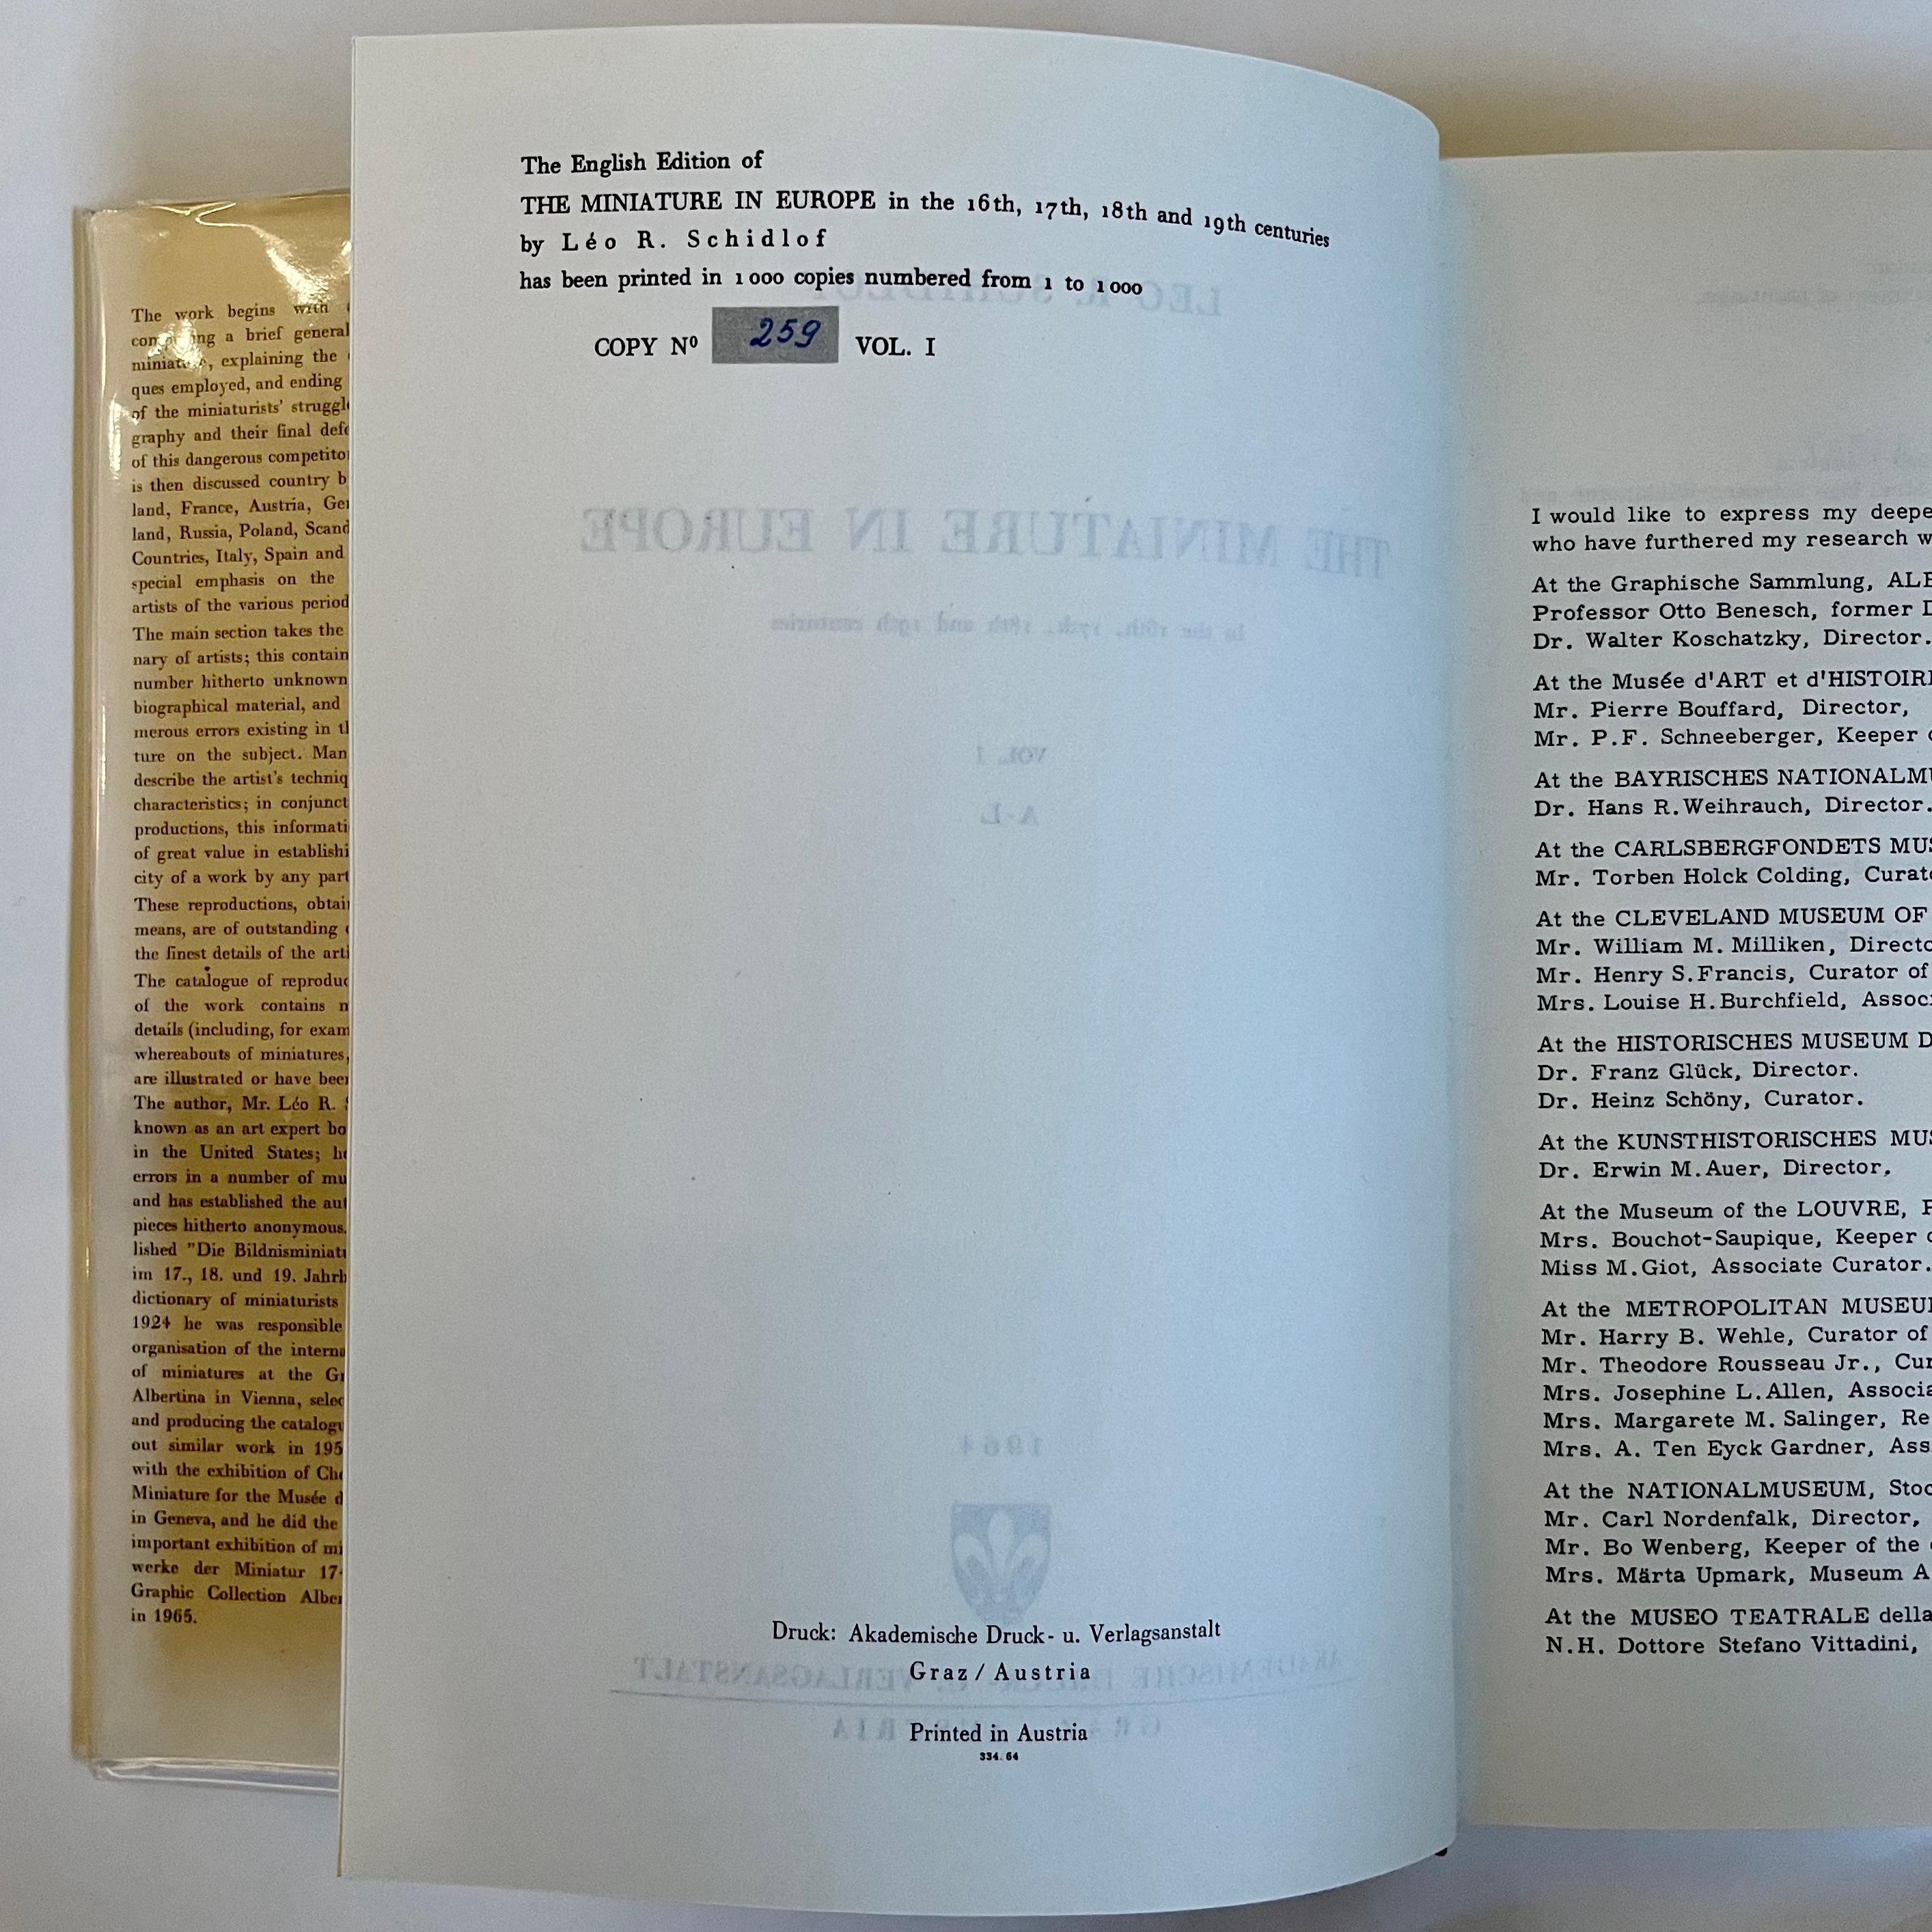 The Miniature in Europe, 4 Bände – Leo R. Schidlof – Akademisches Druck, 1964 (Papier)